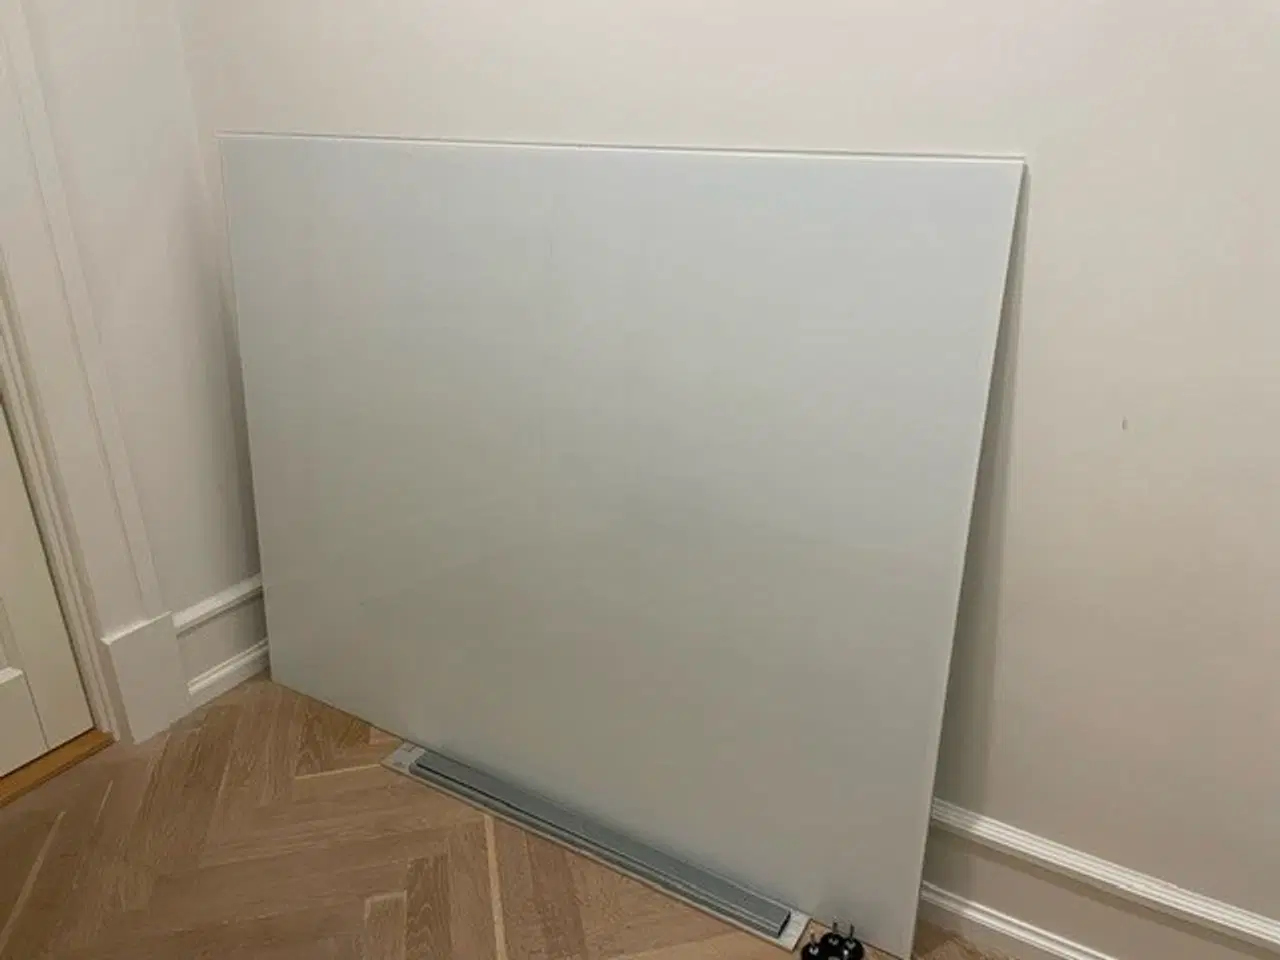 Billede 1 - 2 stk. whiteboards i glas